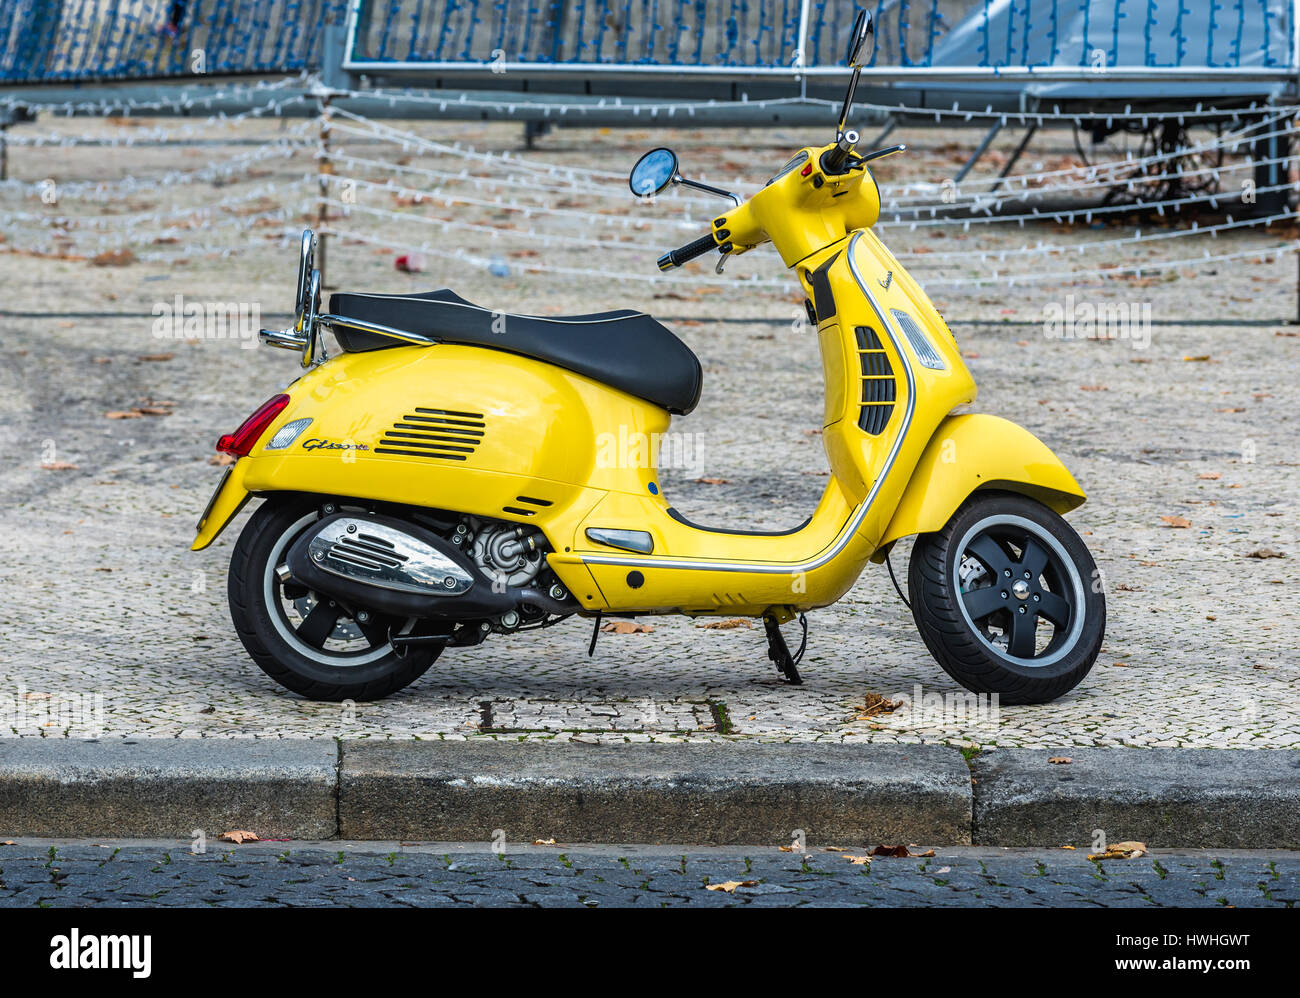 Vespa GTS 300 ie motor scooter en la ciudad Porto en la Península Ibérica y la segunda ciudad más grande de Portugal Fotografía stock -